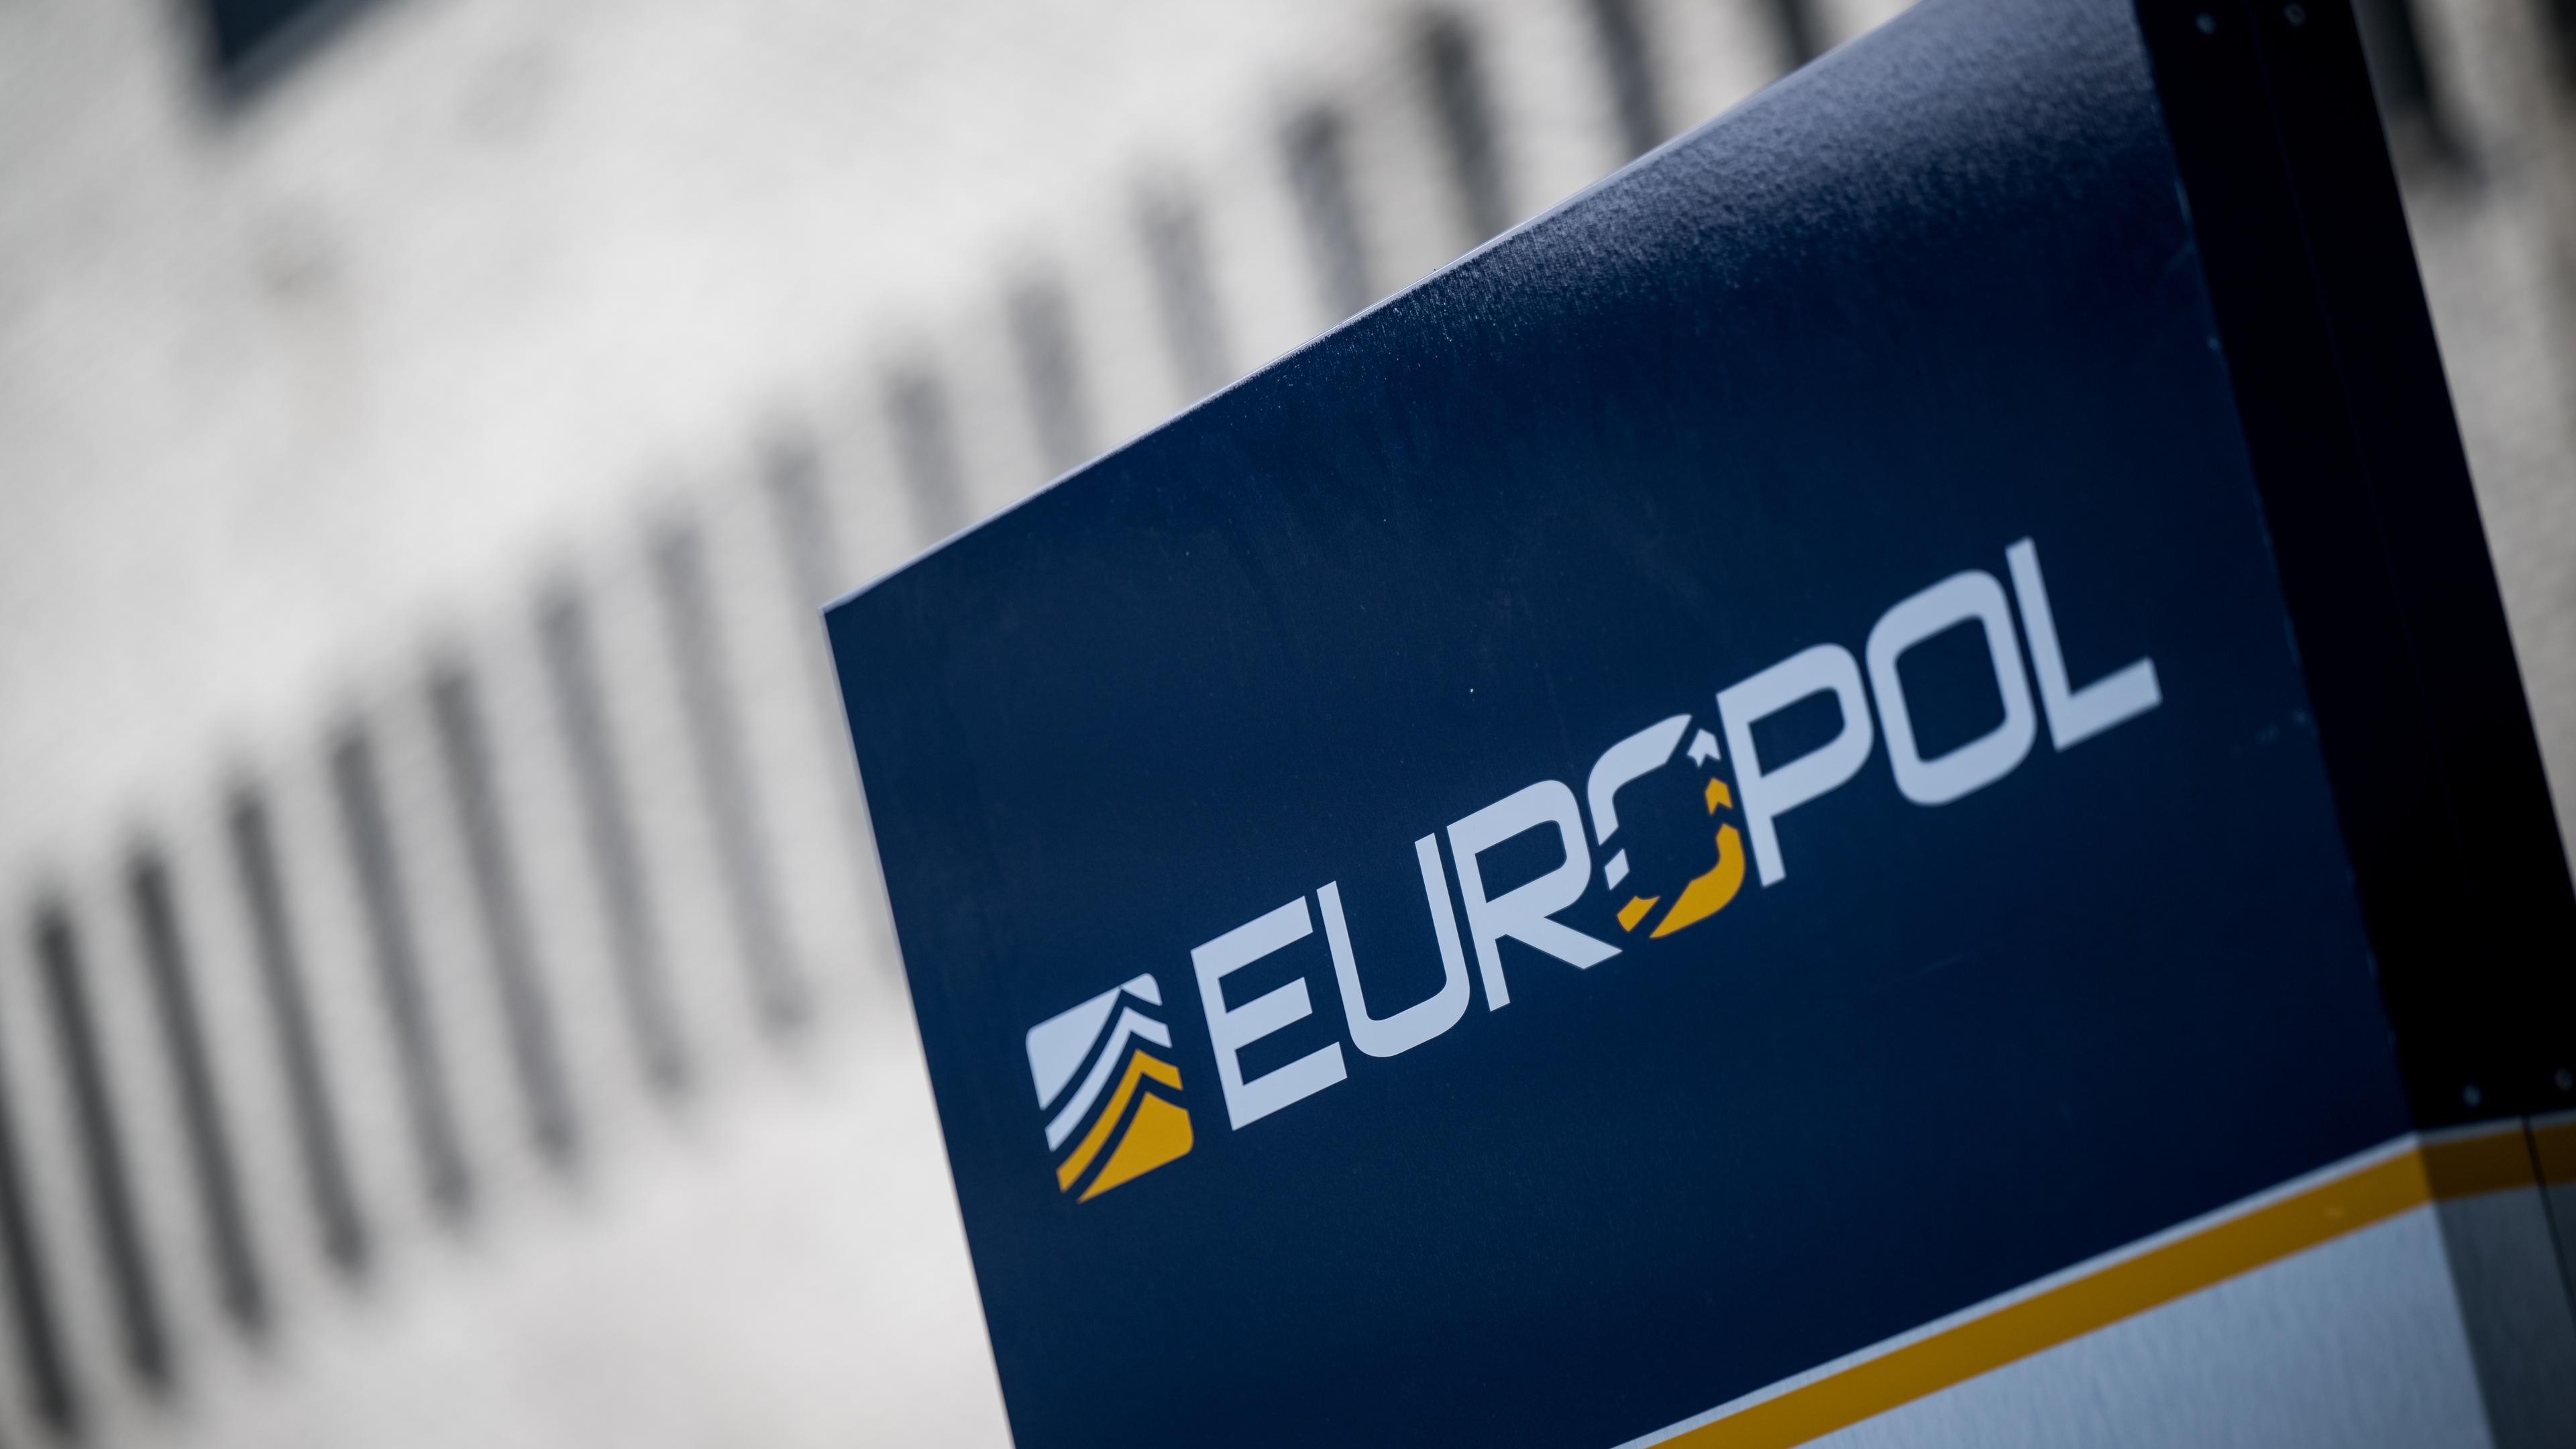 Das Schild "Euopol" am Gebäude von Europol in Den Haag.